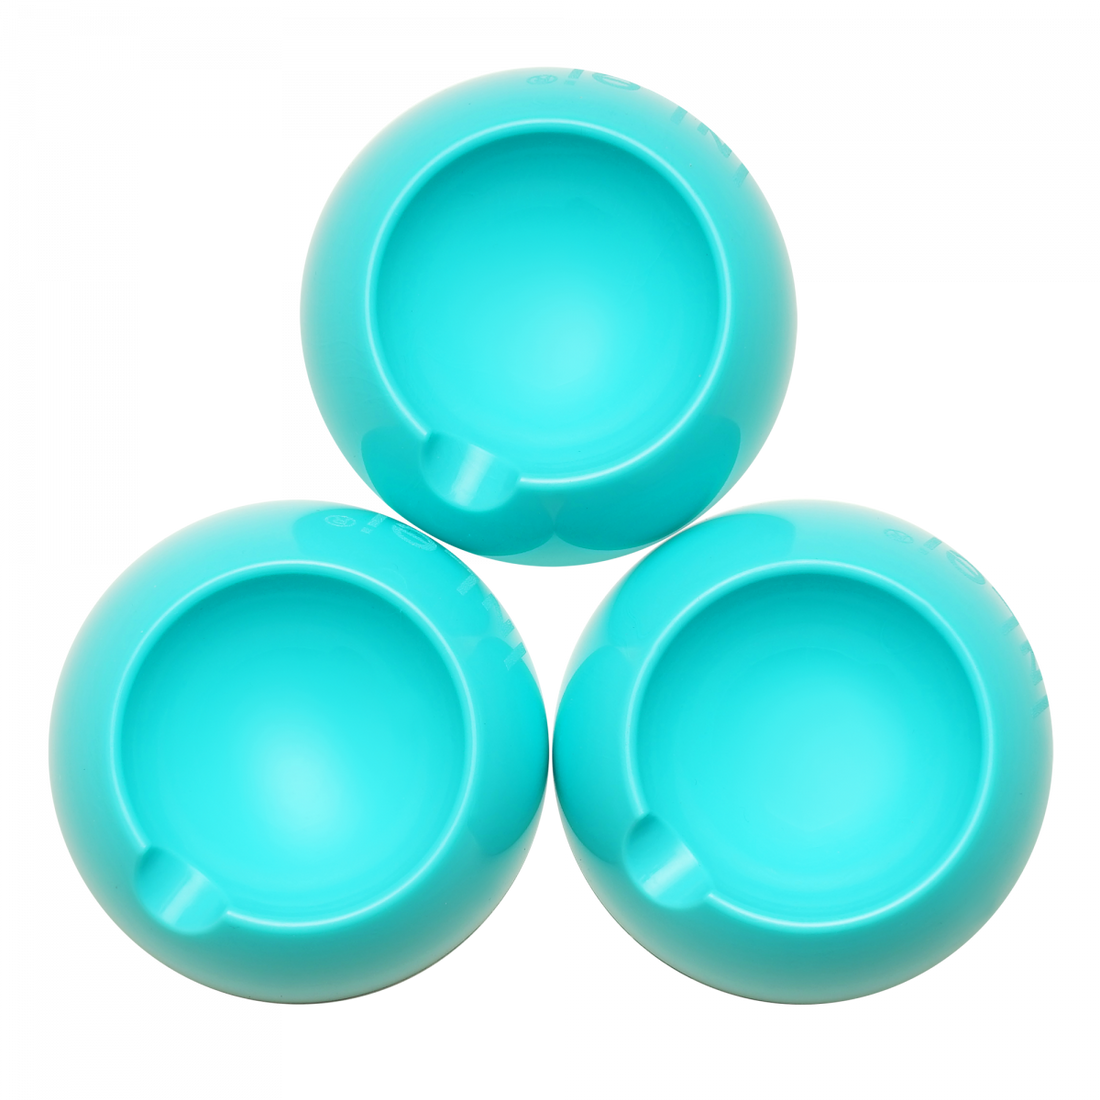 InLei® - Solo - 3 little bowls